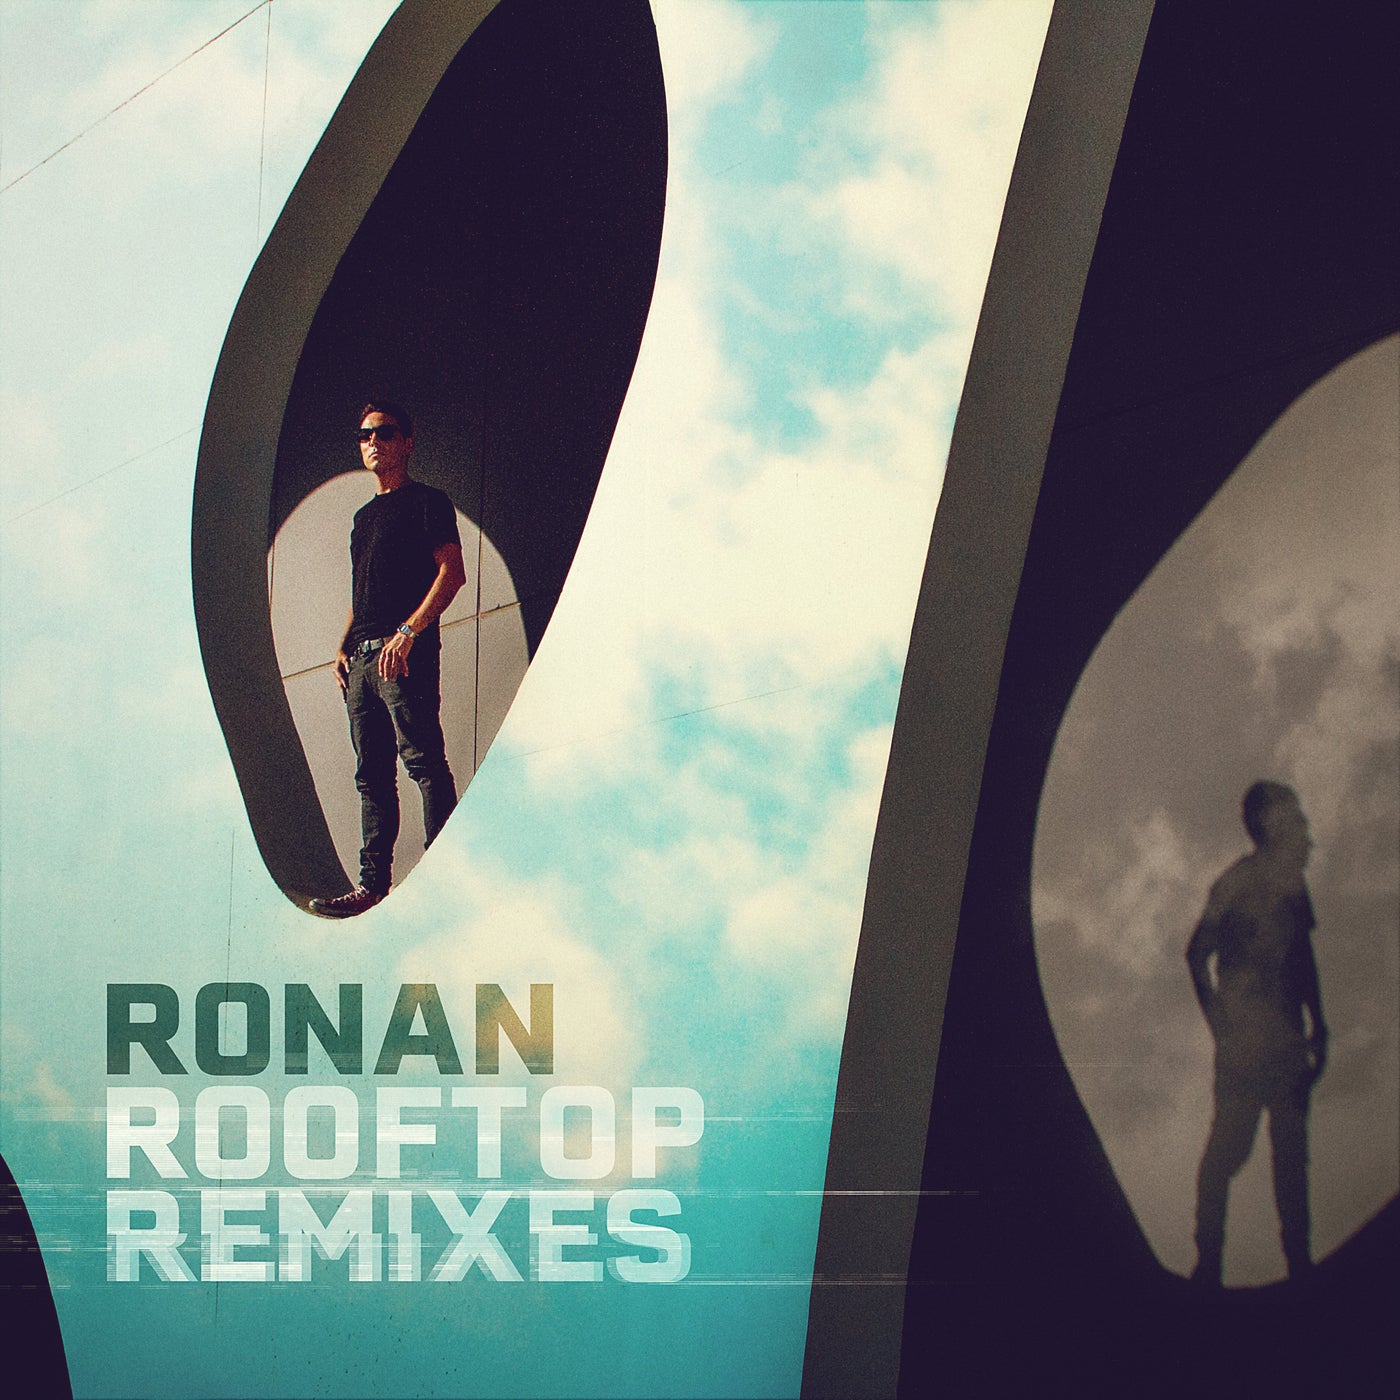 Rooftop Remixes